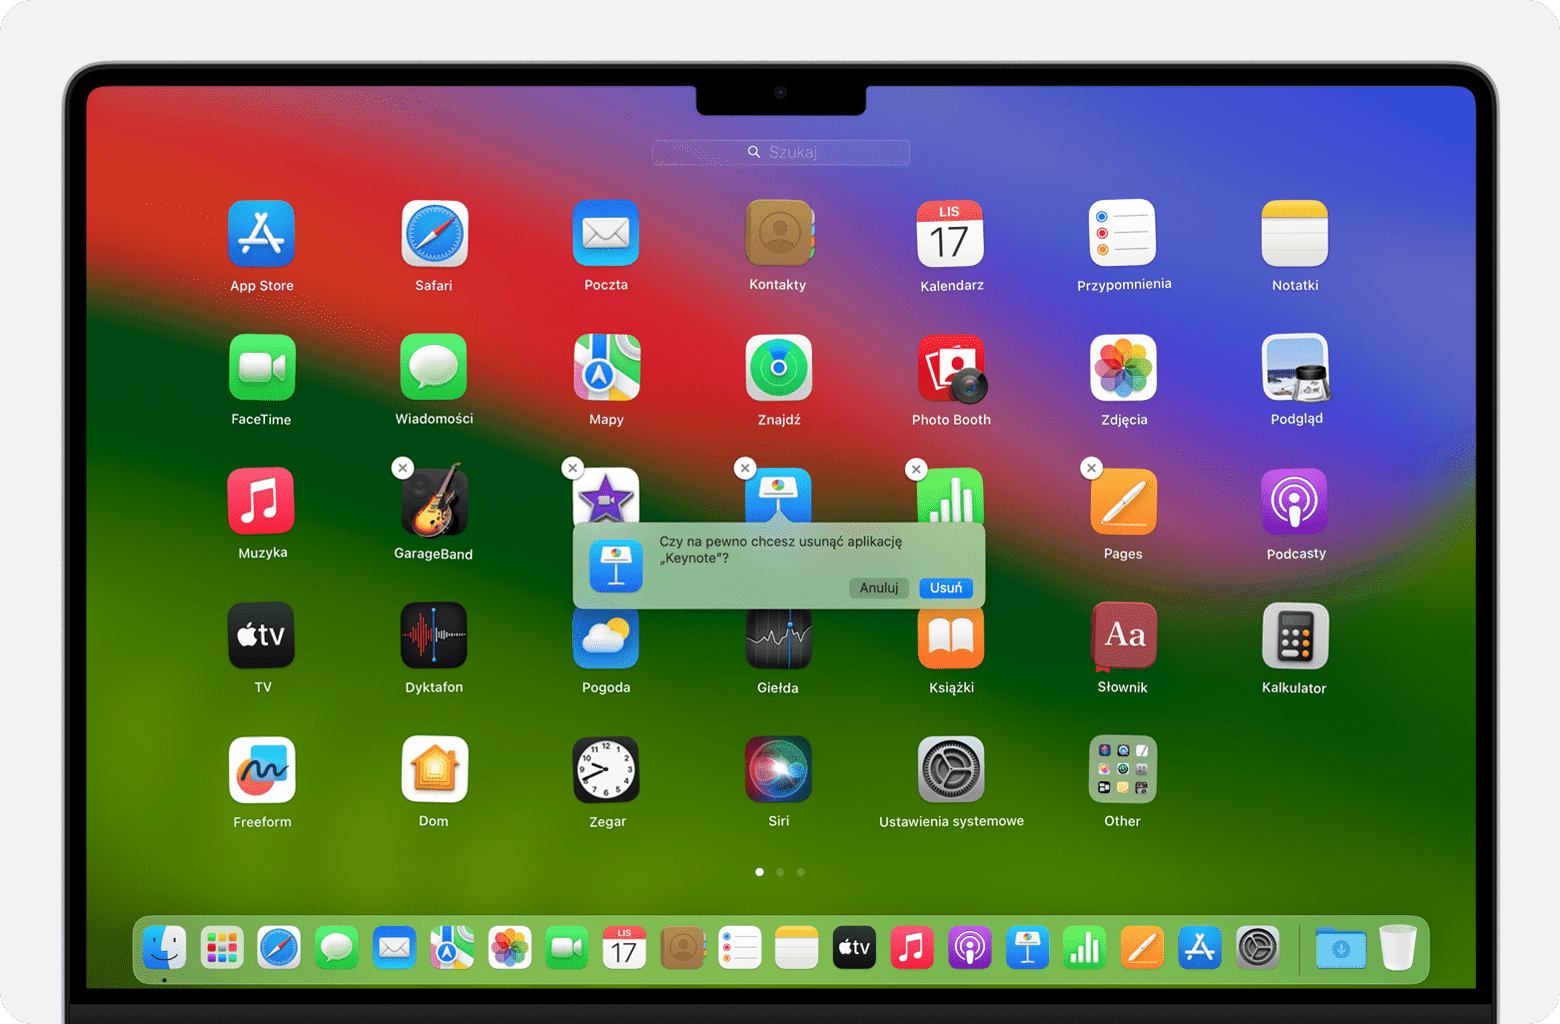 Ekran Maca pokazujący sposób usuwania aplikacji